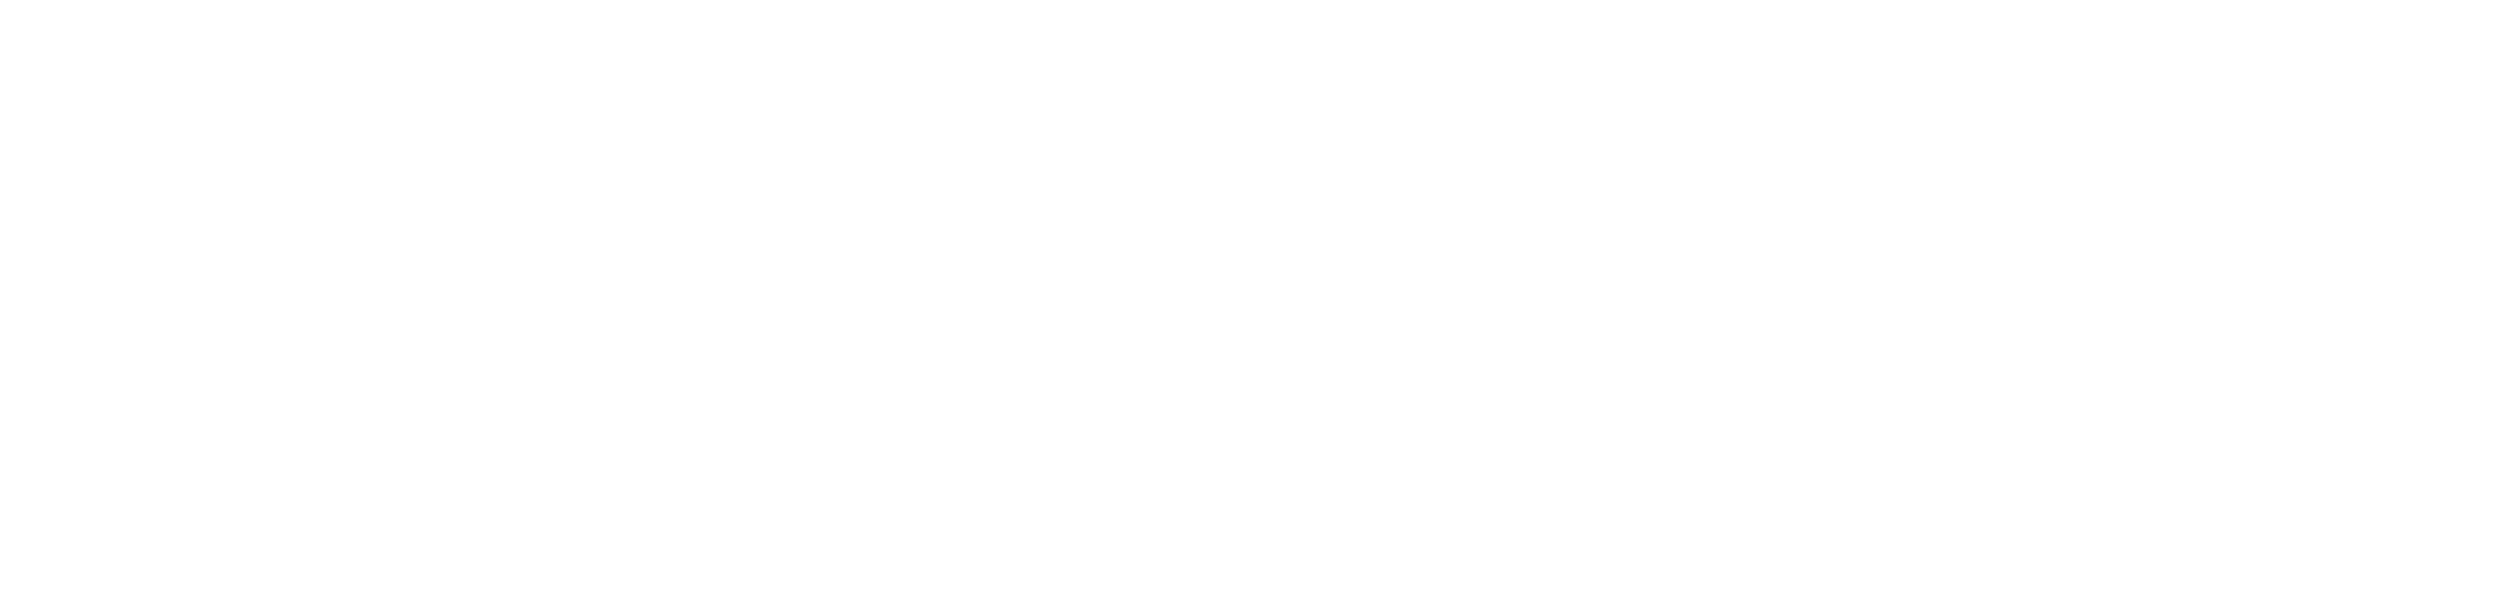 star wars battlefront ea logo